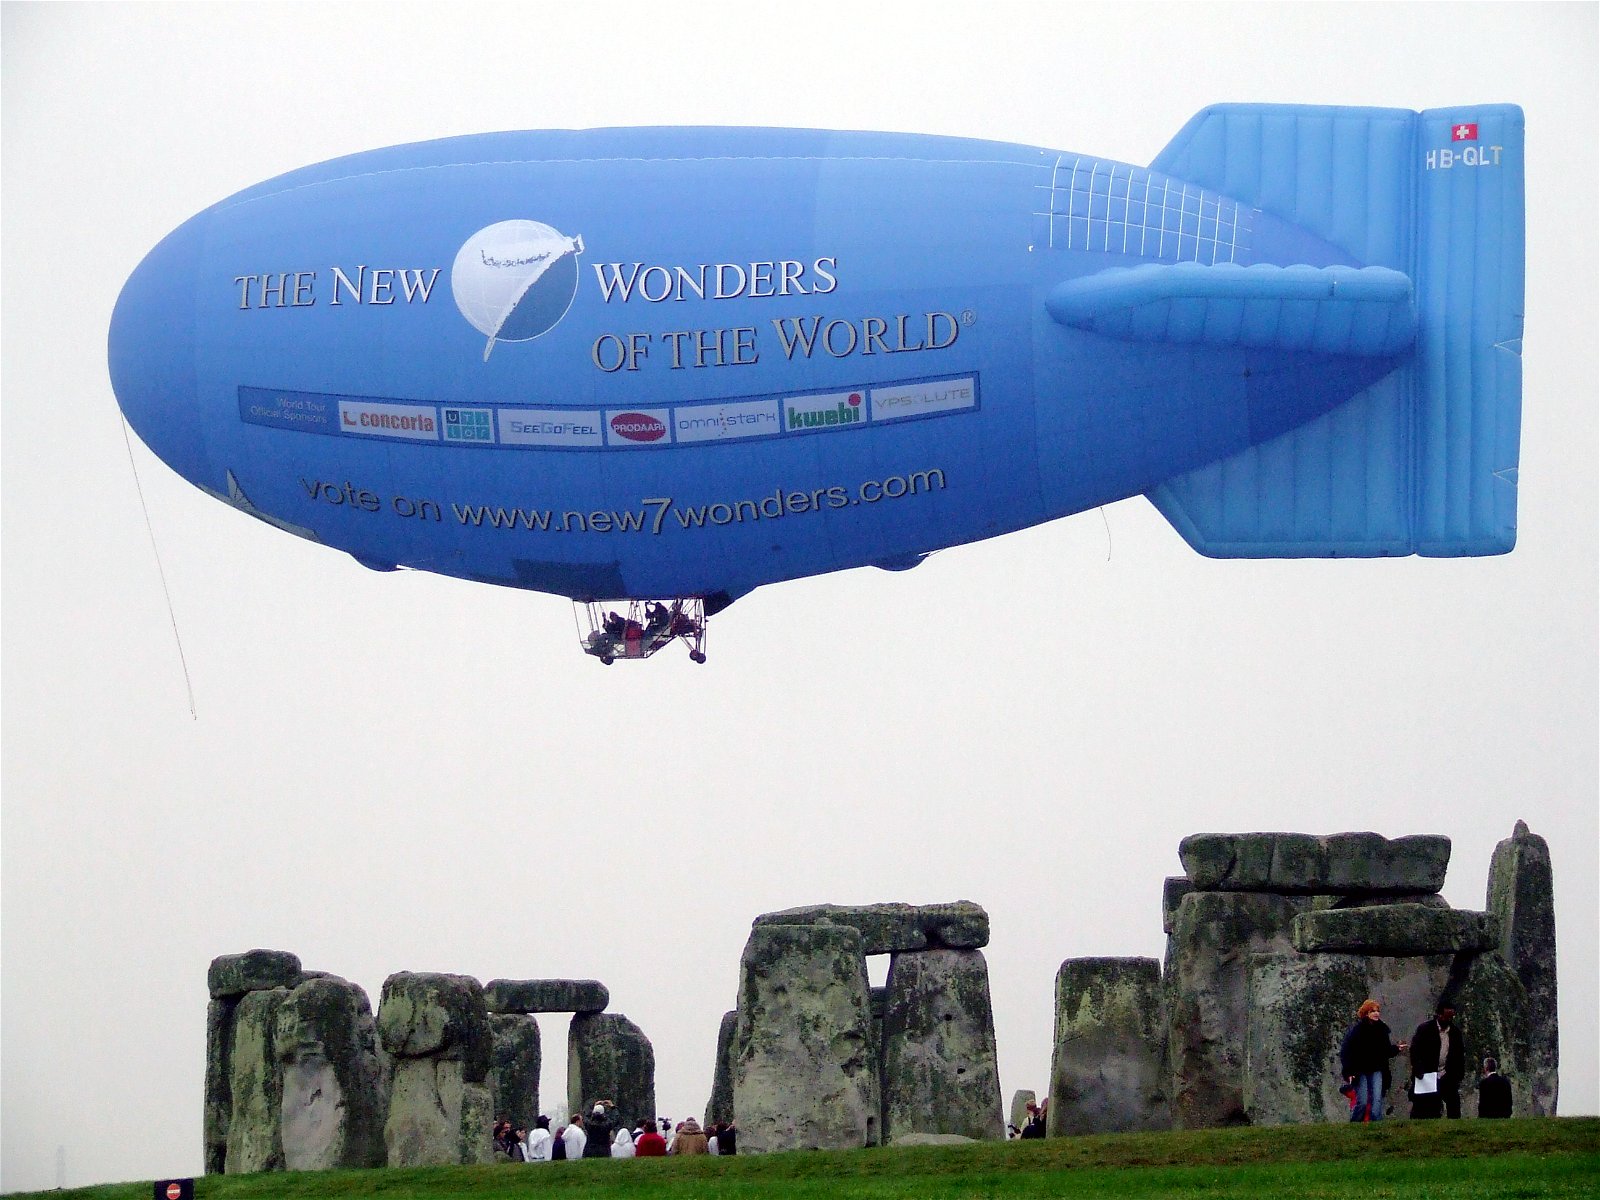 original 7 wonders of the world stonehenge